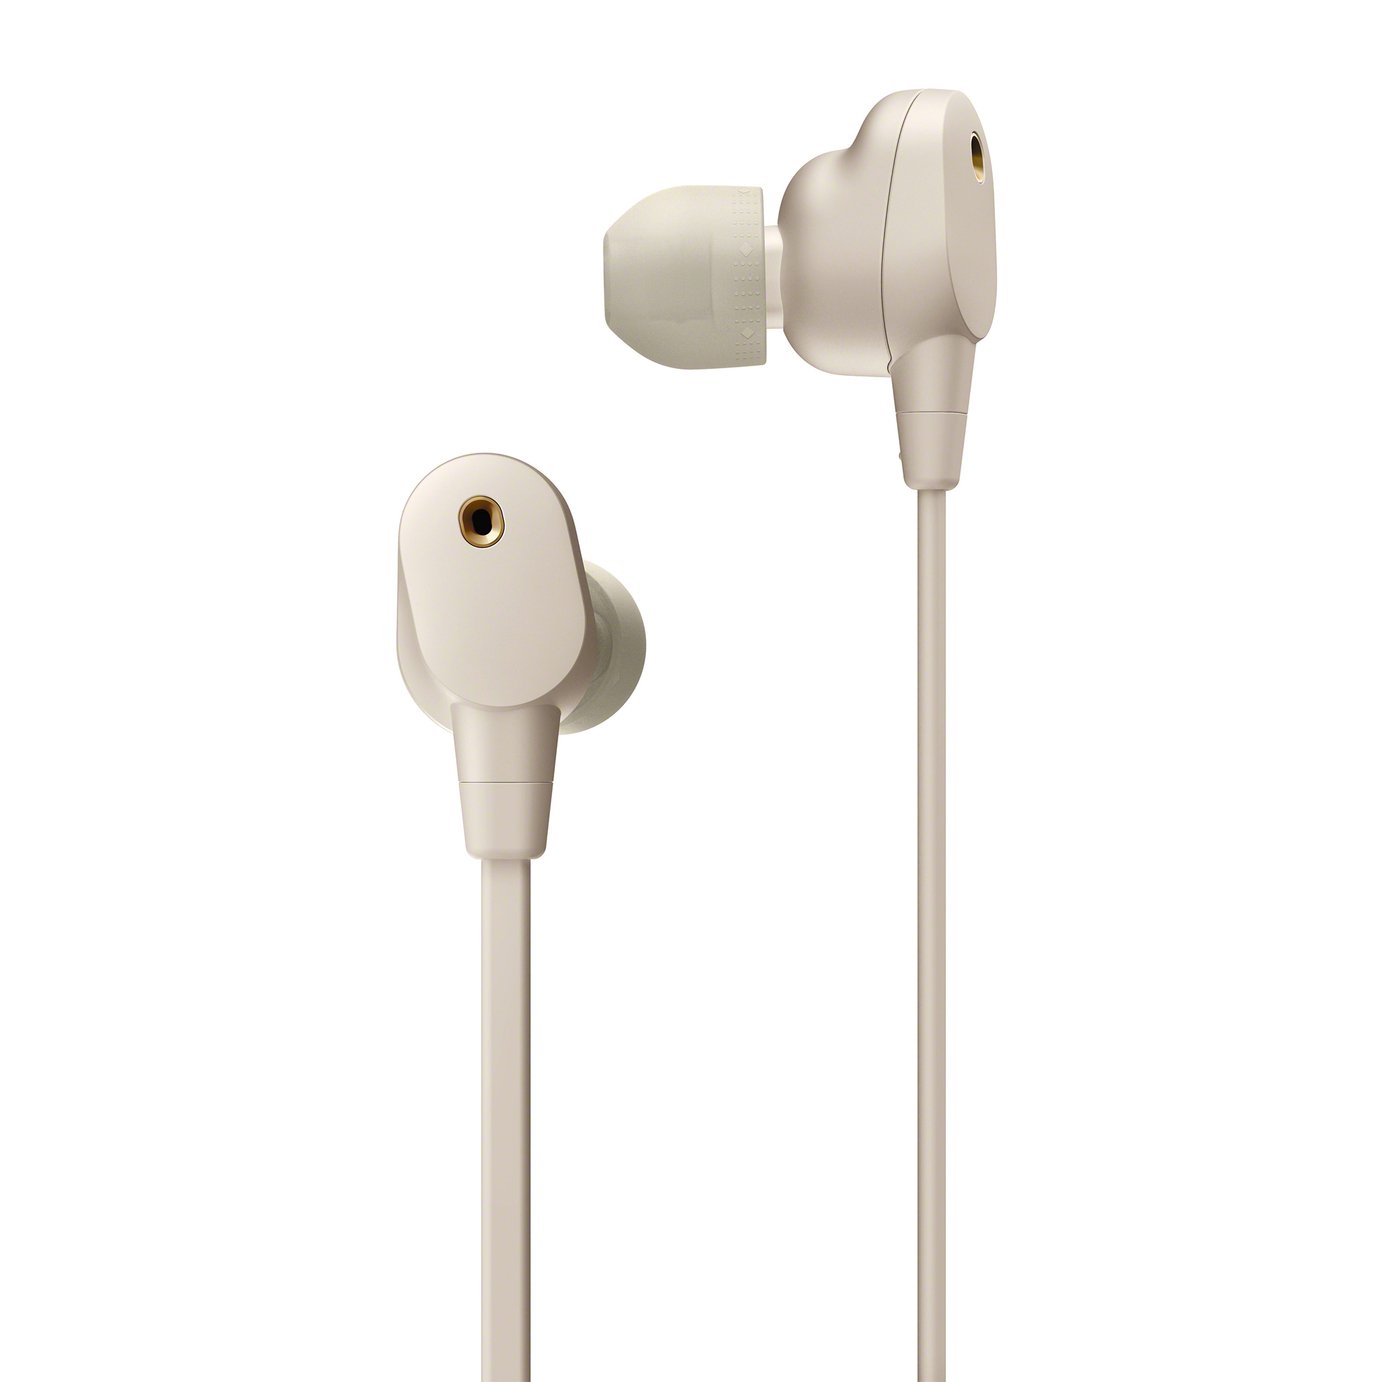 Sony WI-1000XM2 In-Ear Wireless Headphones Review